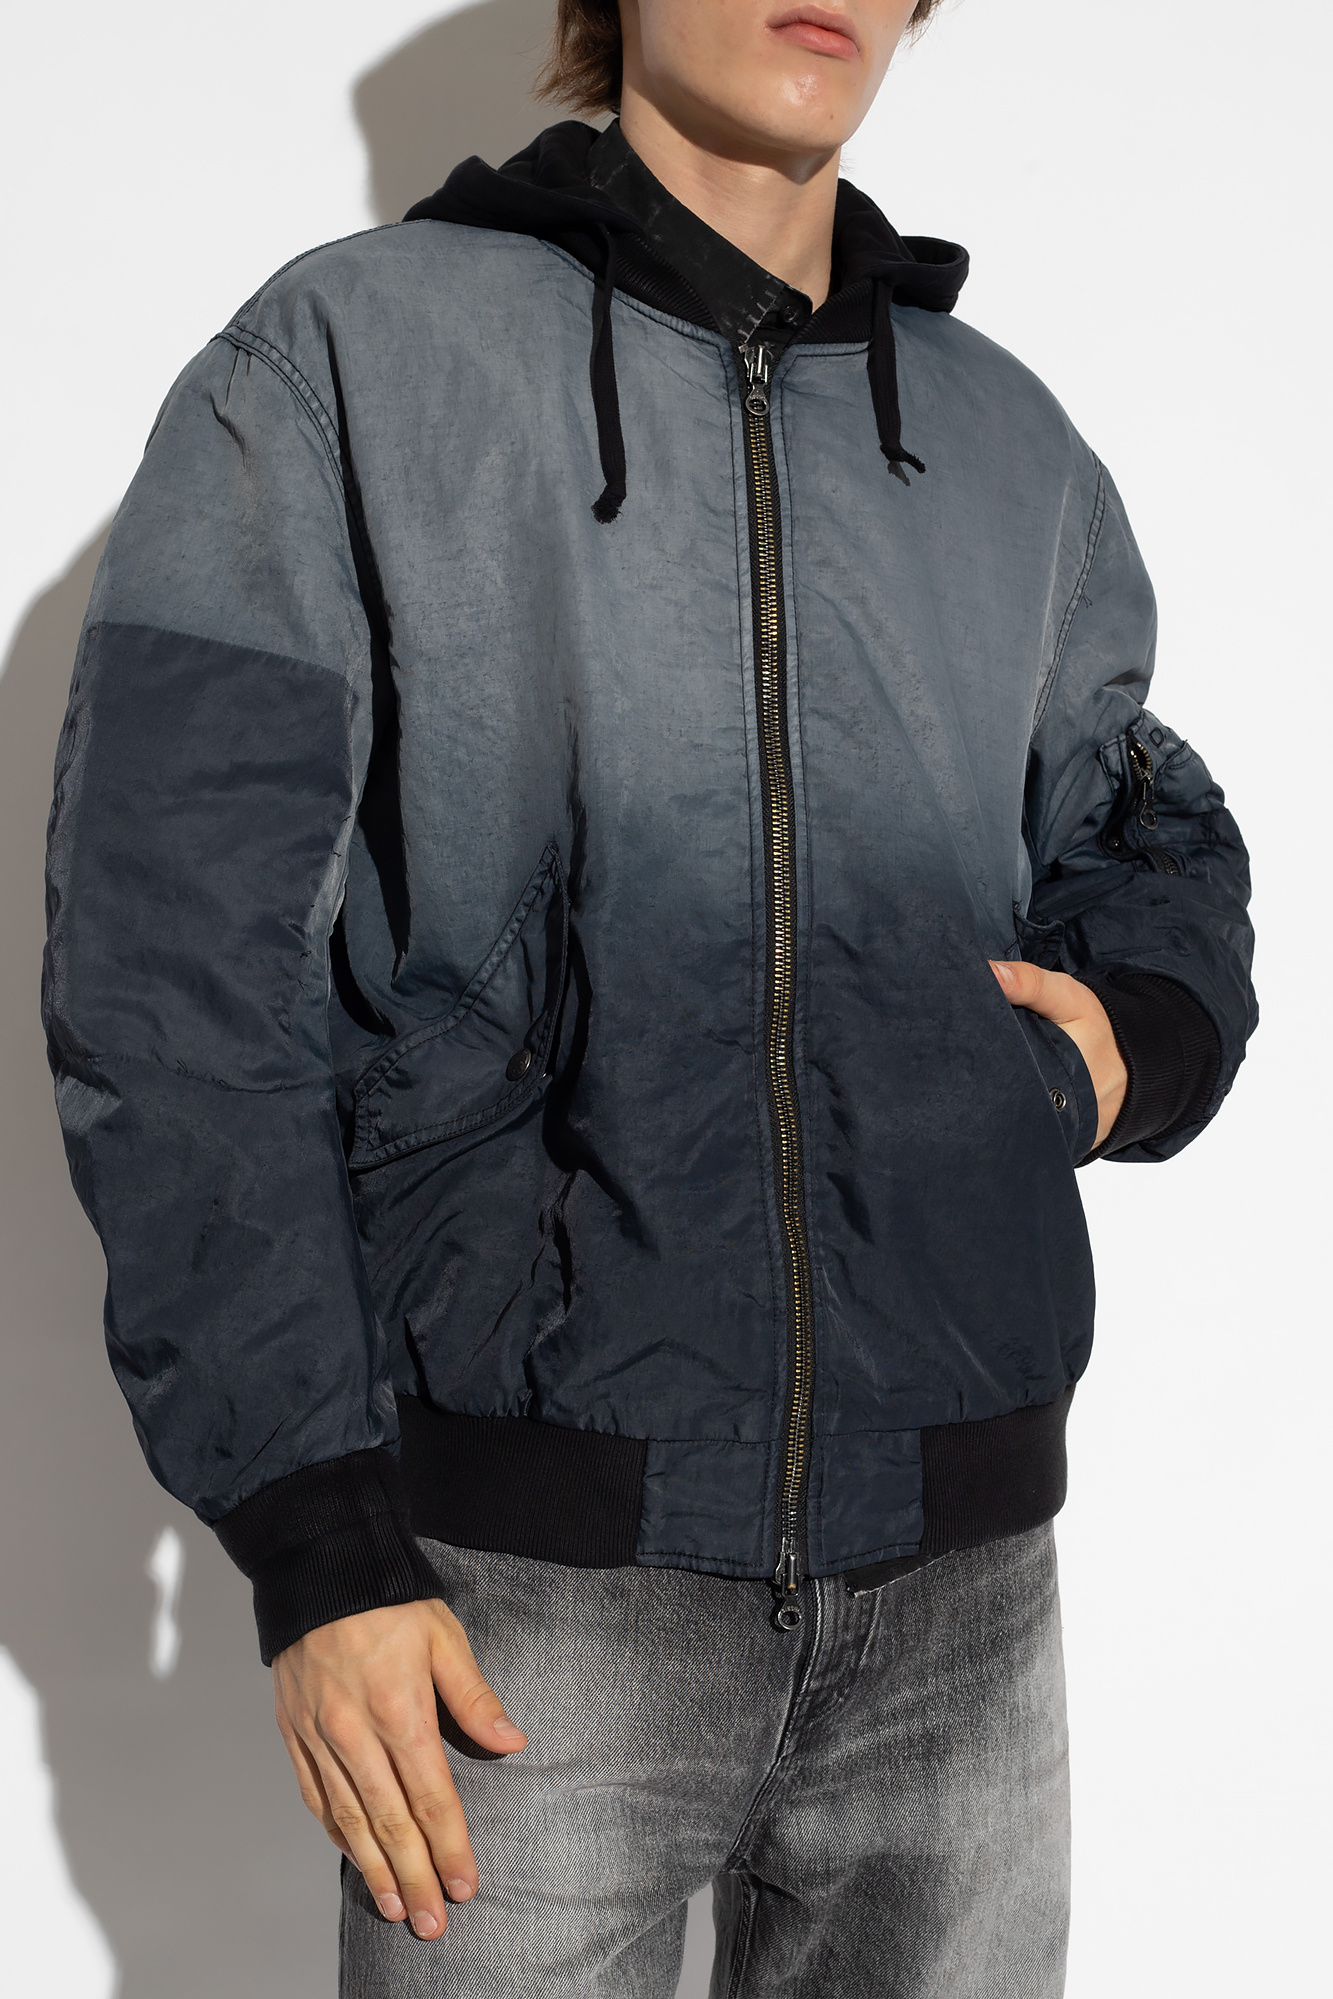 Diesel 'J-COMMON' bomber jacket | Men's Clothing | Vitkac